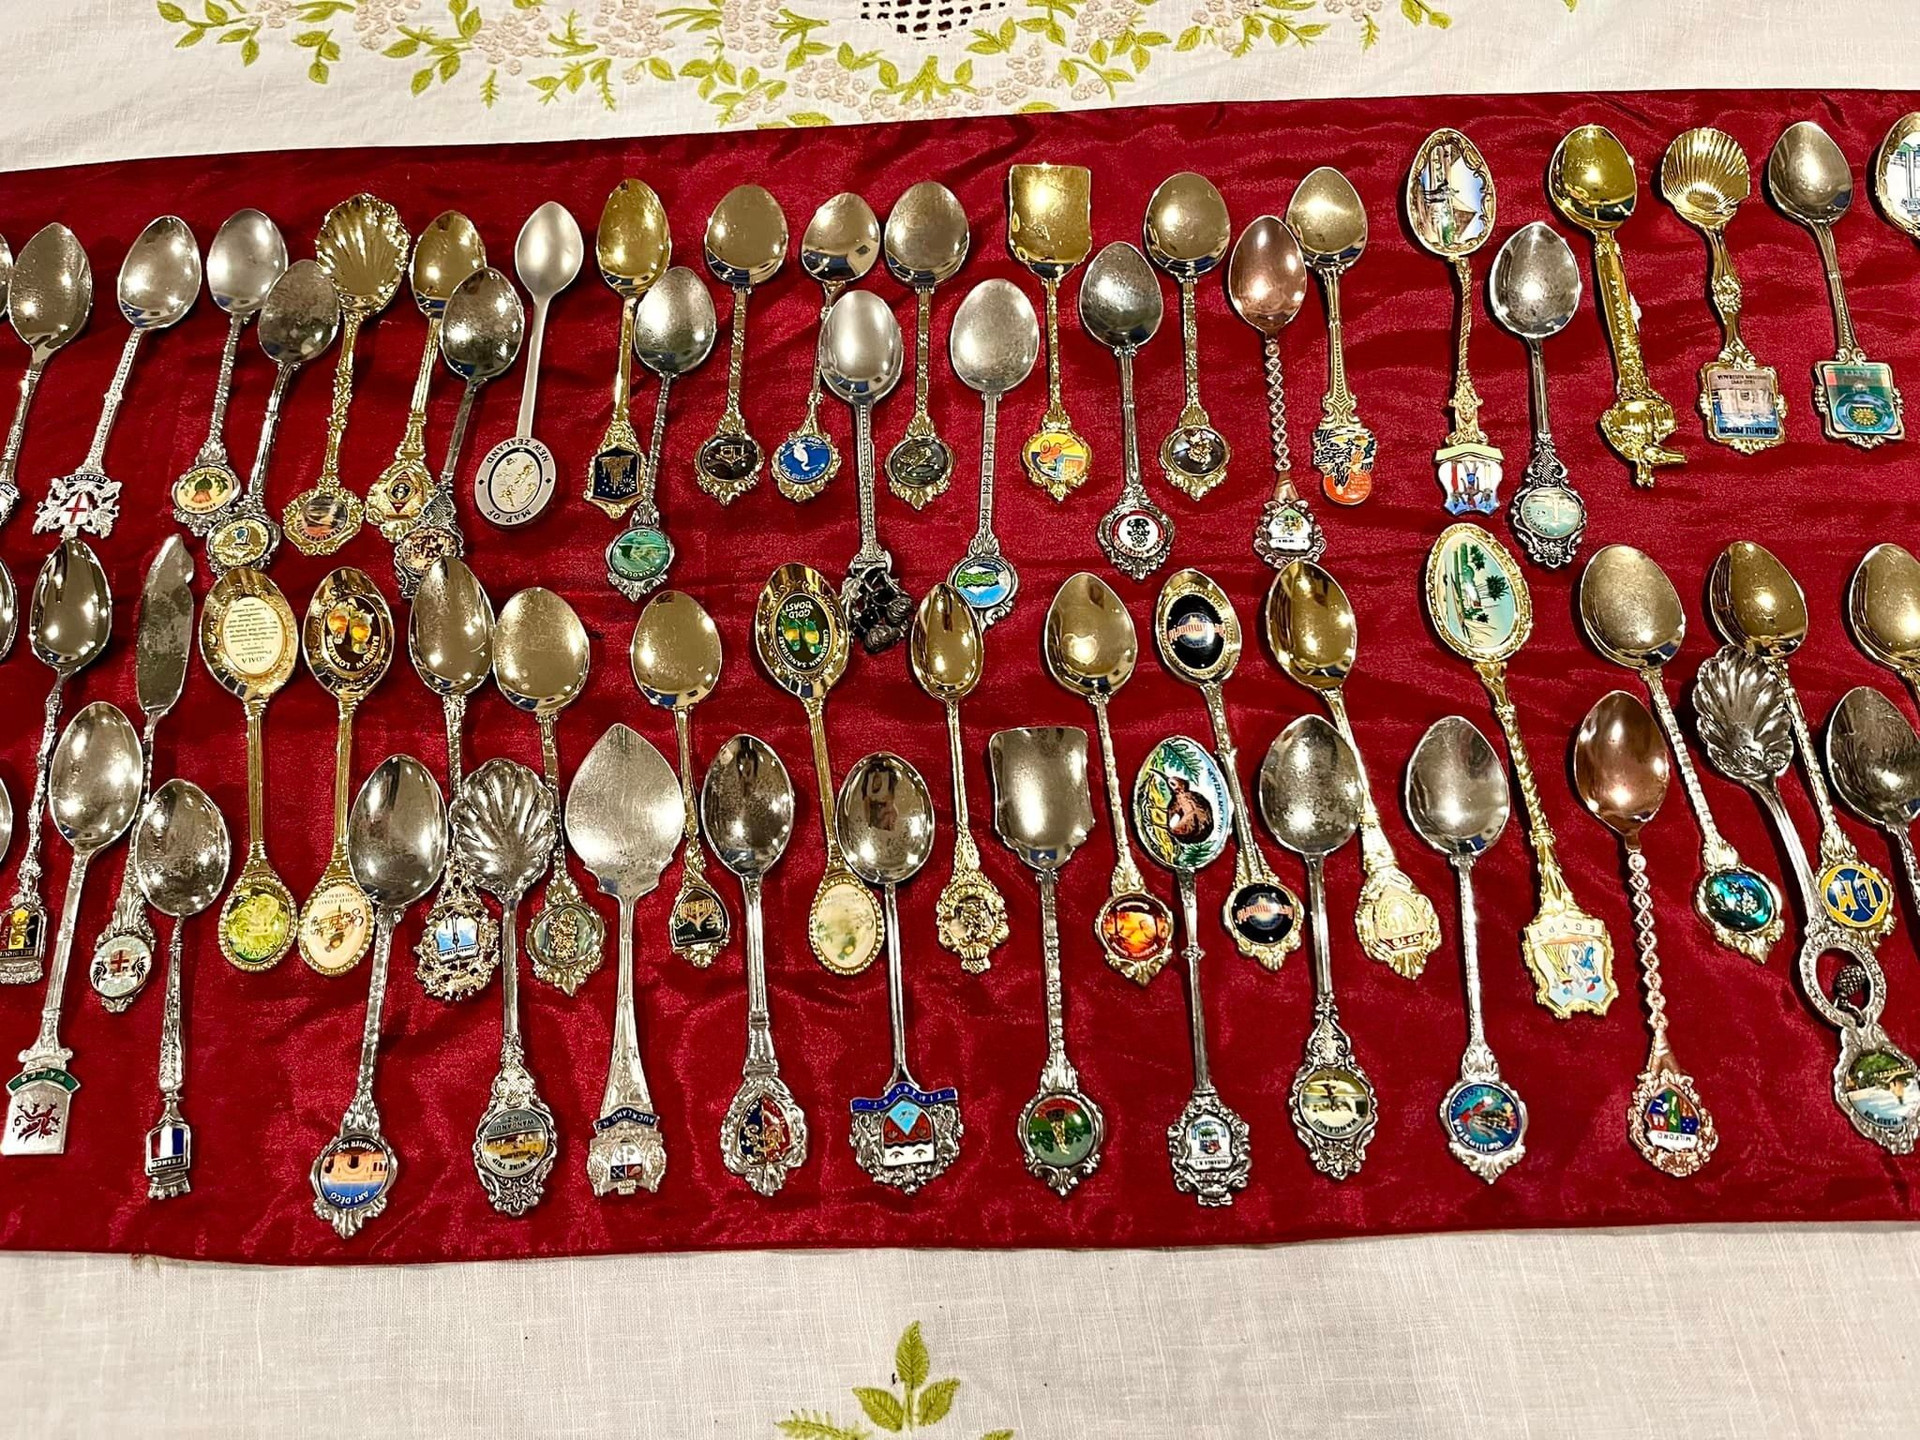 Người phụ nữ Việt đi qua 55 quốc gia, sưu tập hàng nghìn thìa bạc độc lạ - 4